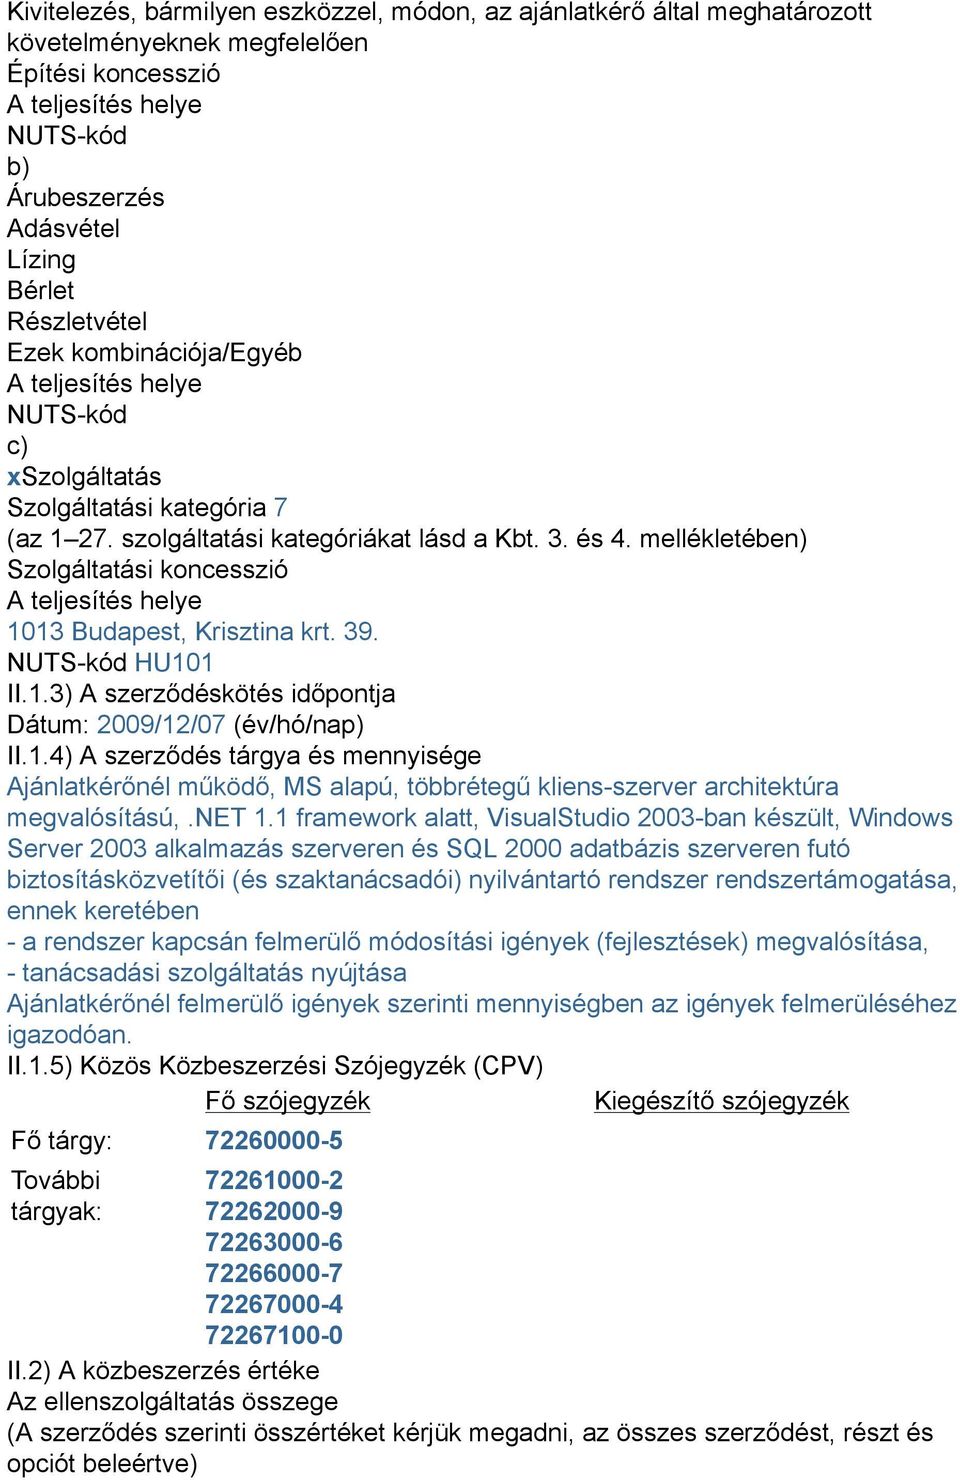 mellékletében) Szolgáltatási koncesszió A teljesítés helye 1013 Budapest, Krisztina krt. 39. NUTS-kód HU101 II.1.3) A szerződéskötés időpontja Dátum: 2009/12/07 (év/hó/nap) II.1.4) A szerződés tárgya és mennyisége Ajánlatkérőnél működő, MS alapú, többrétegű kliens-szerver architektúra megvalósítású,.